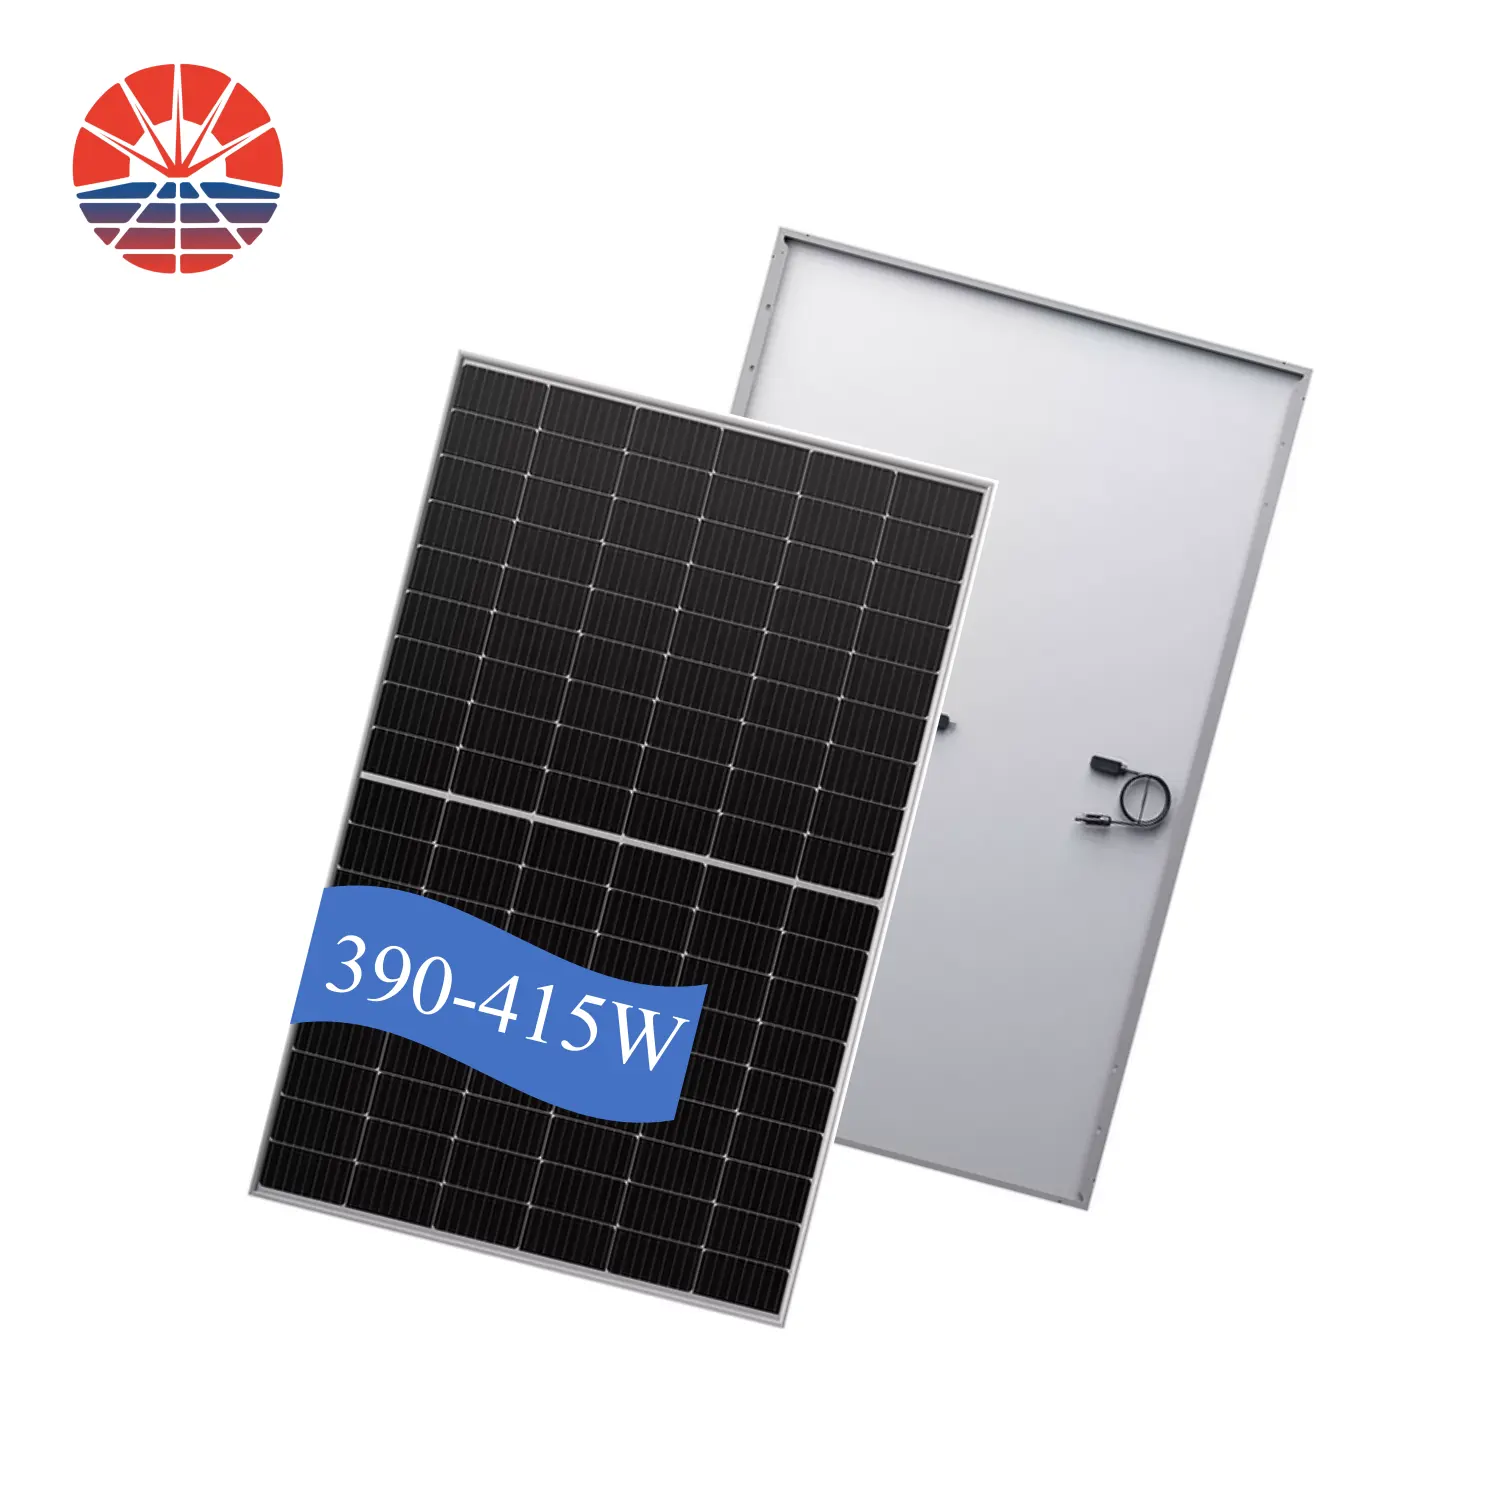 REDSUN tüm güneş panelleri 400 watt fiyat ev için Mono fotovoltaik paneller 390W 400 W 410W fotovoltaik modülleri fiyat toptan